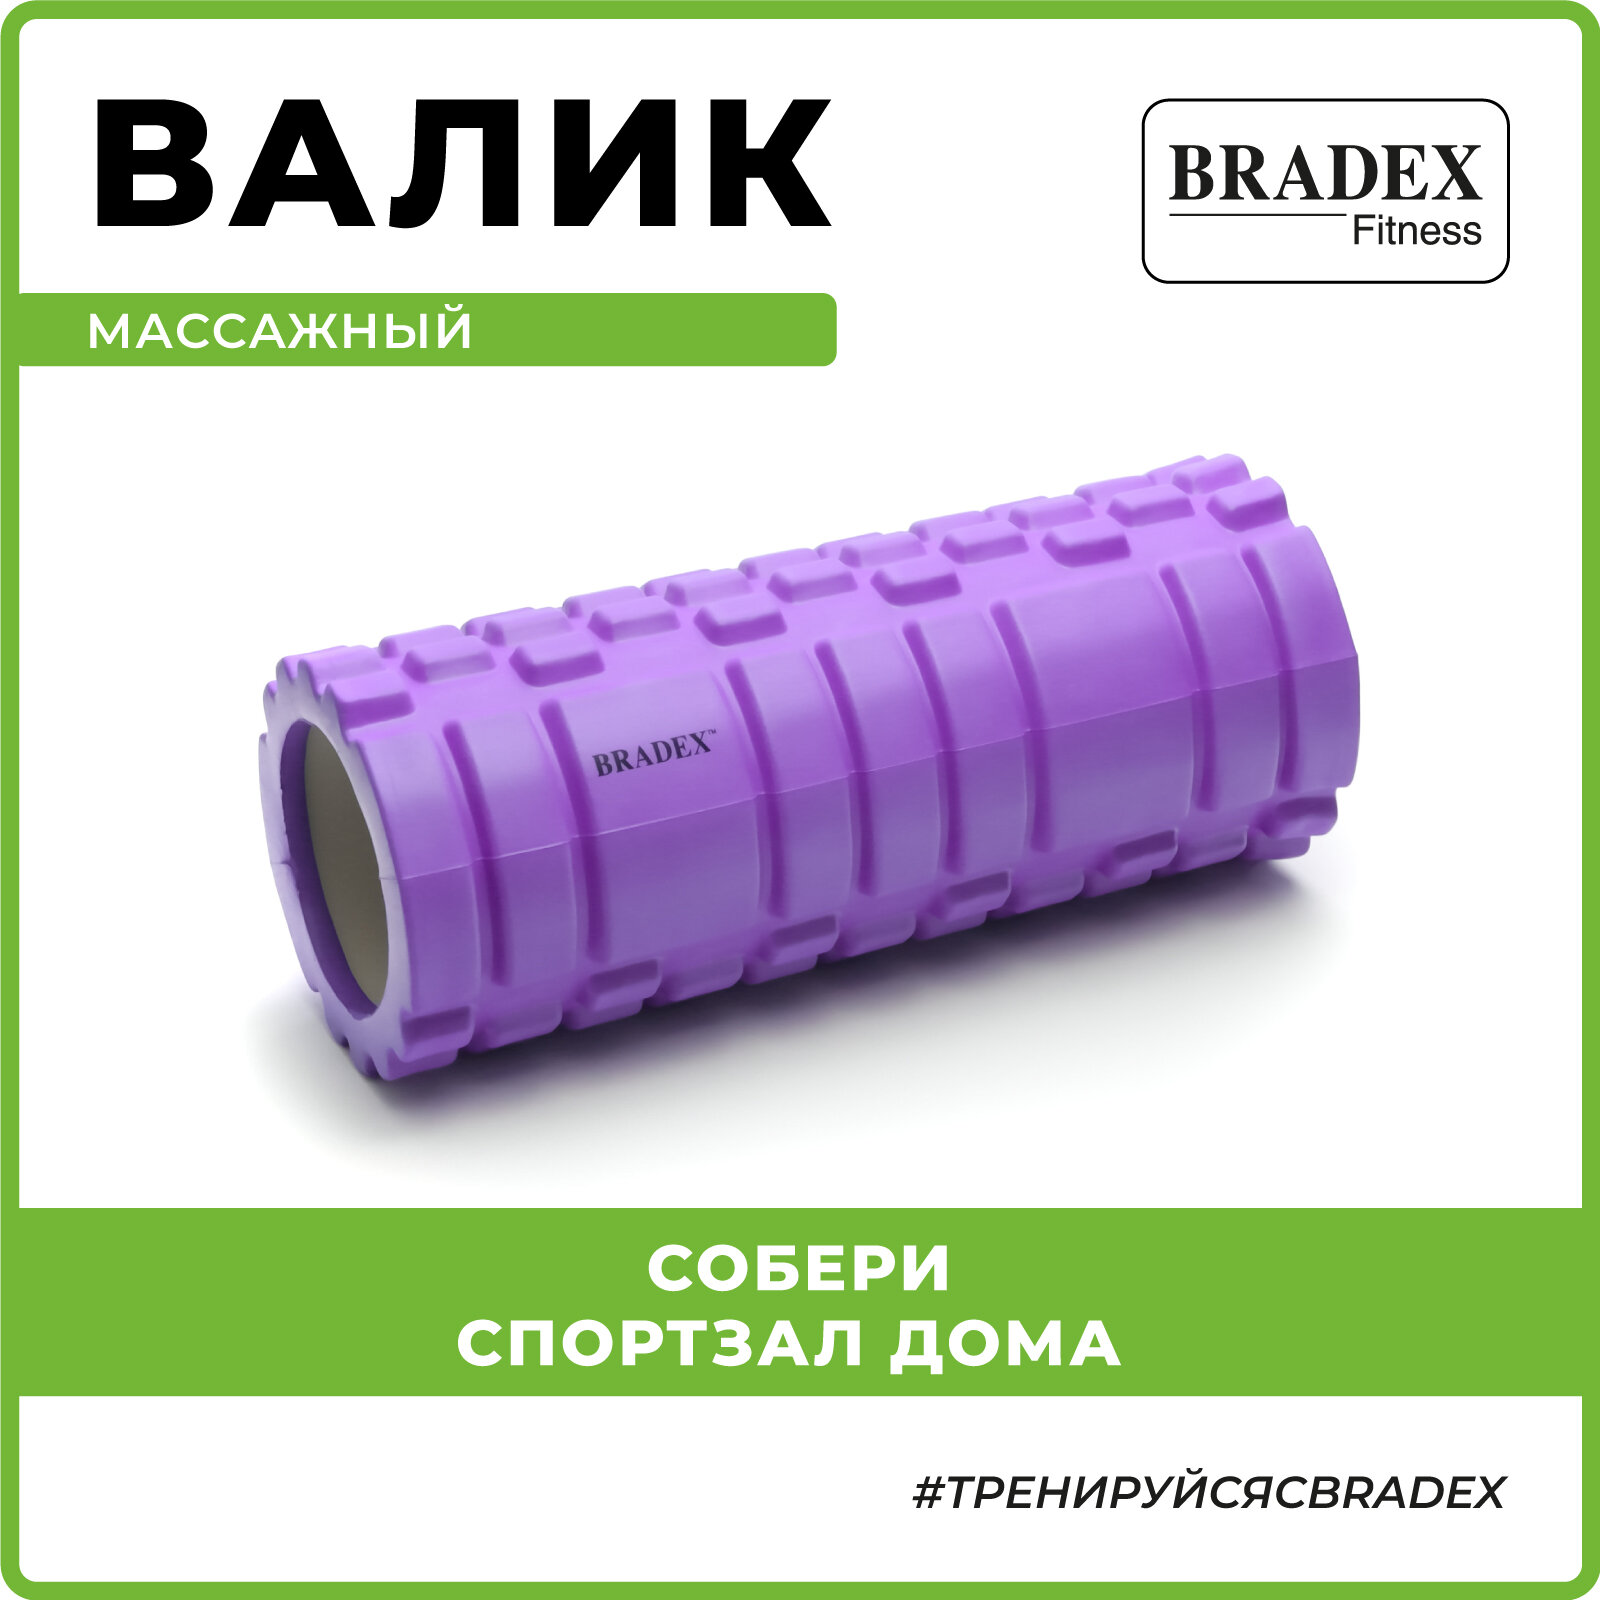 Валик для фитнеса Bradex туба массажный, фиолетовый